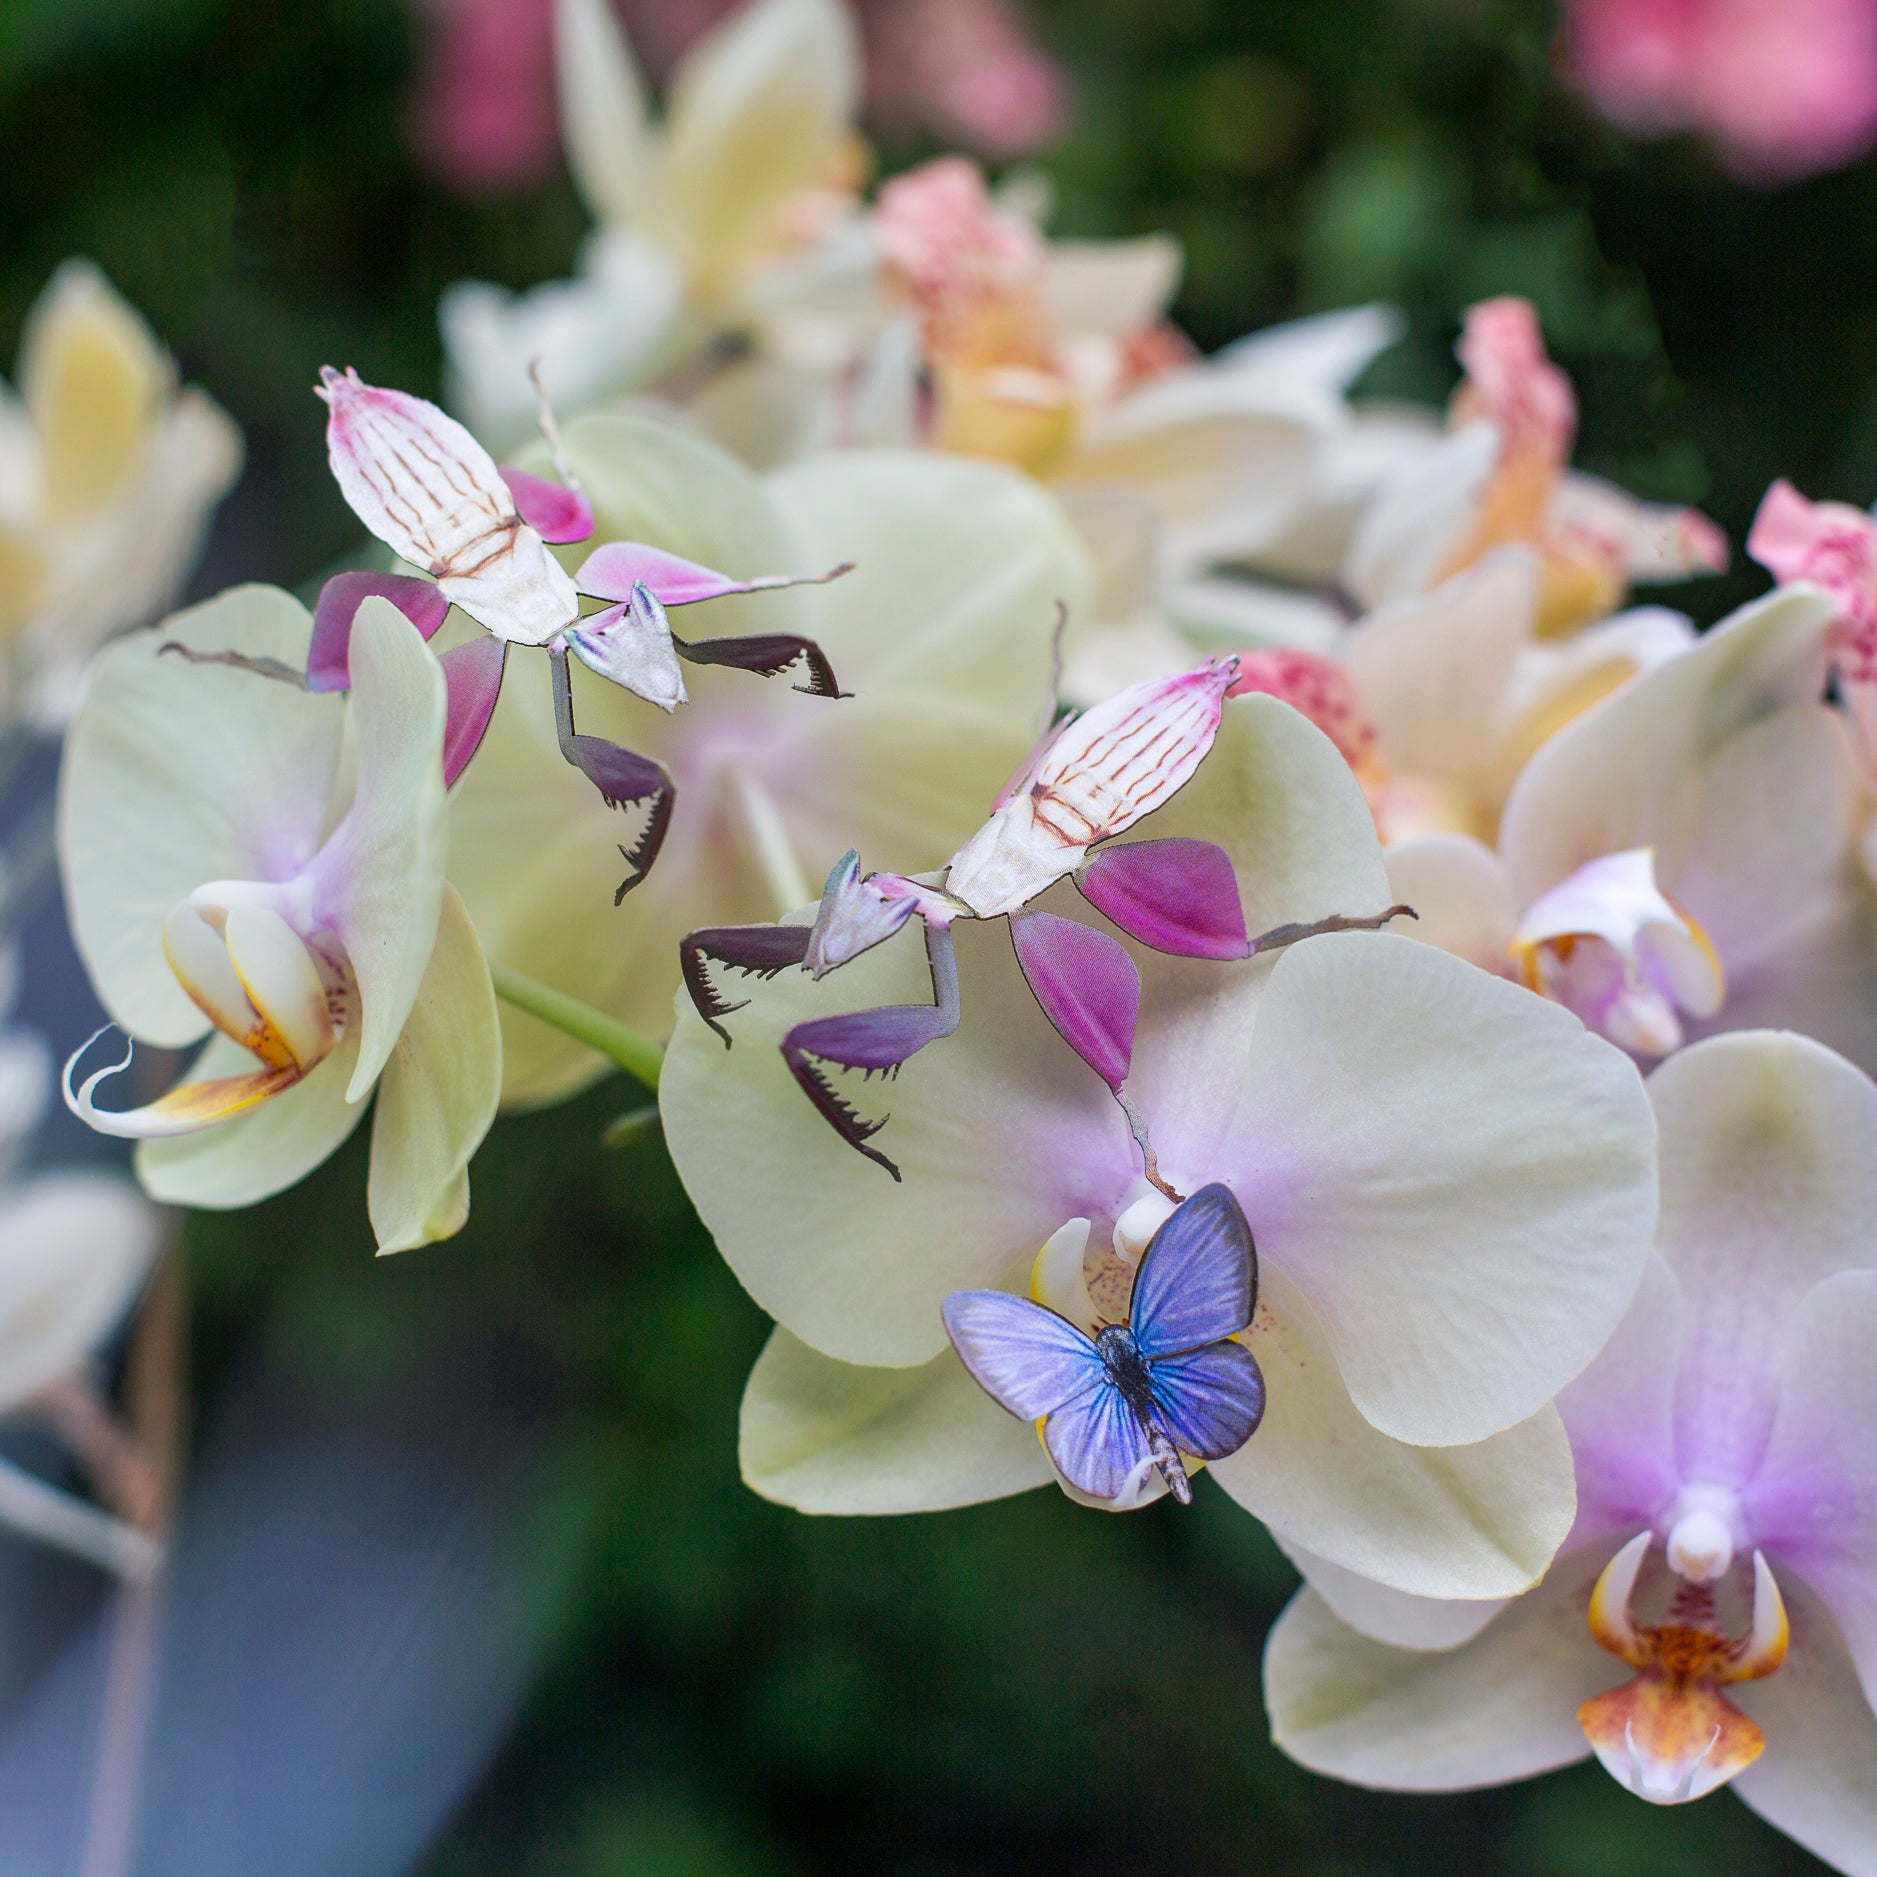 'Orchid' Mantis Set Reseller Wholesale